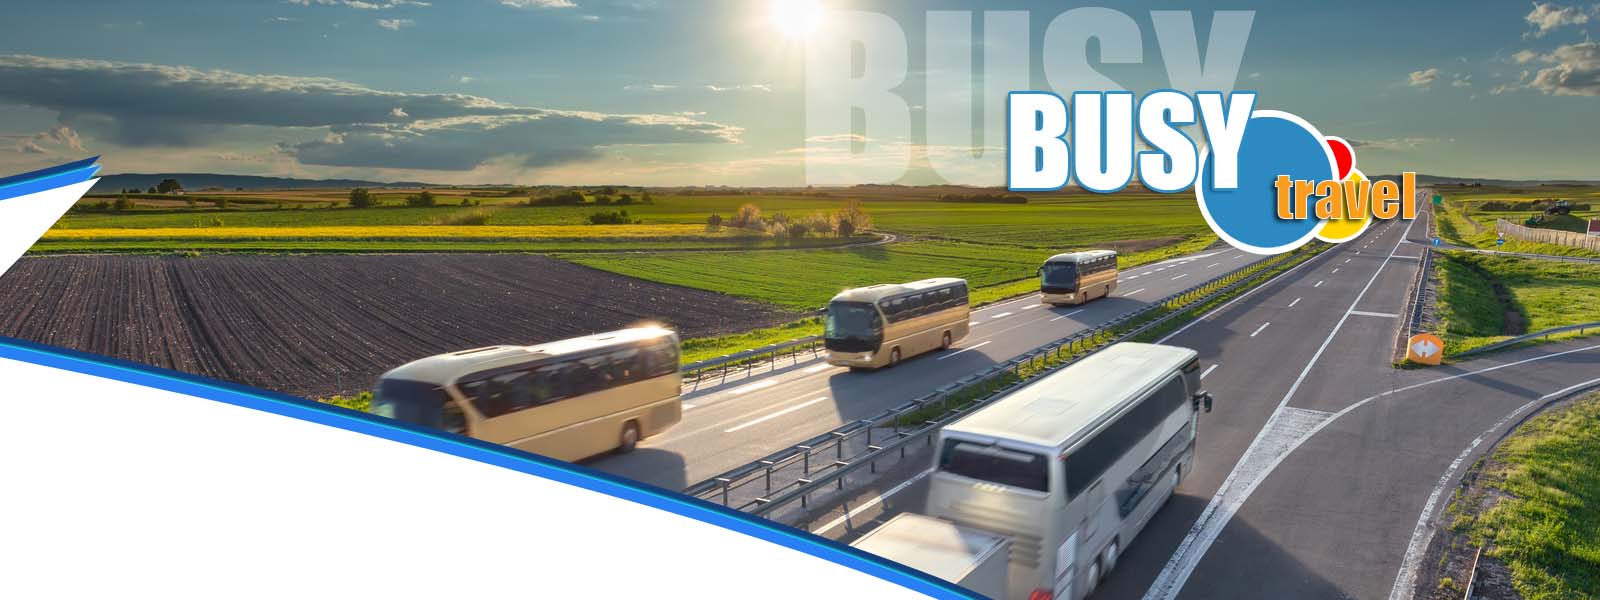 Busy.Travel - Przewozy Międzynarodowe, wynajem busów !